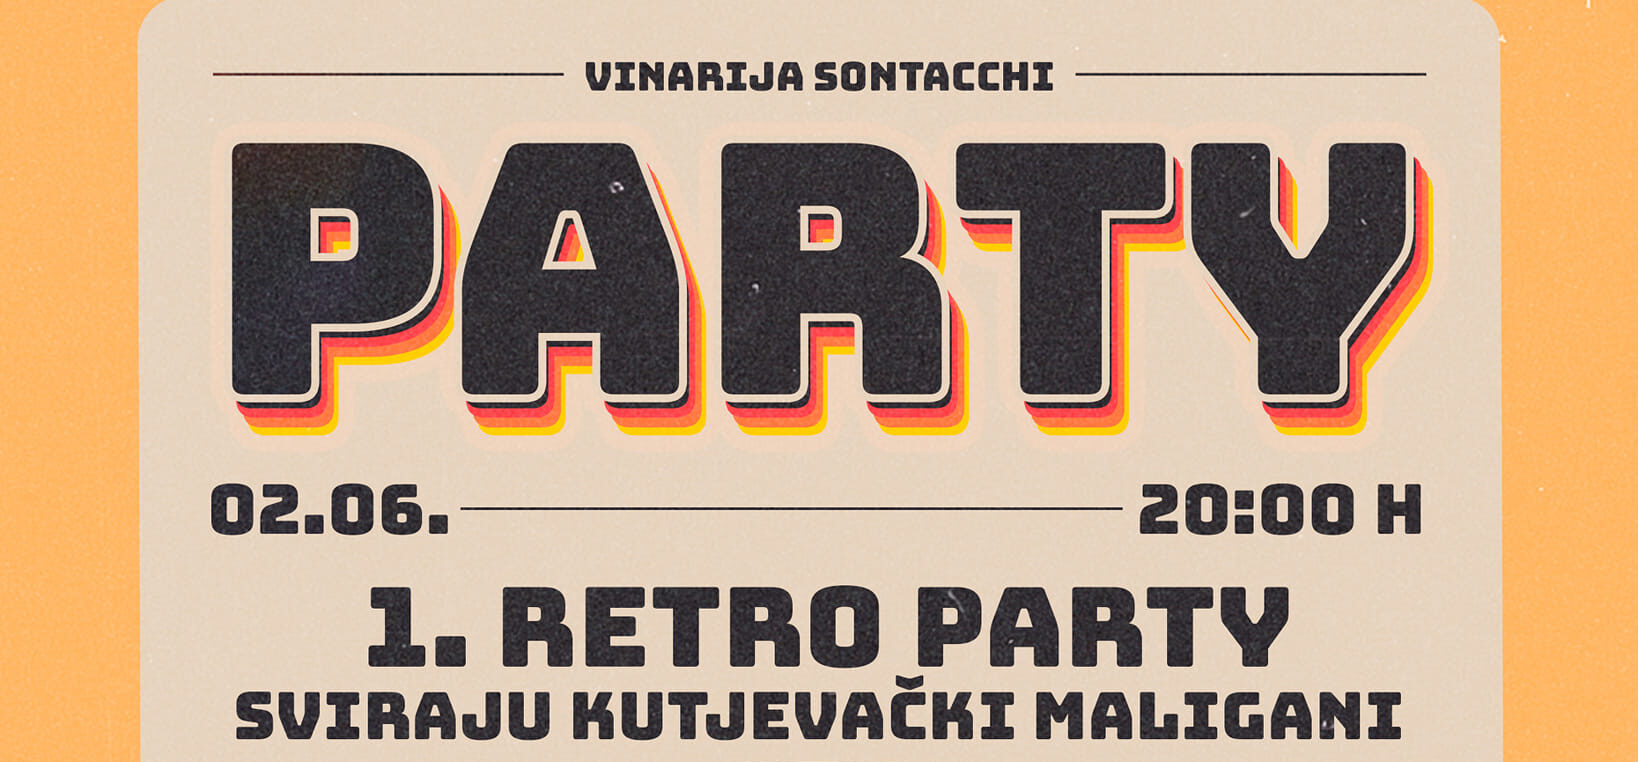 Požega.eu | [NAJAVA] Početak Kulturnog ljeta u Kutjevu – Retro party u Vinariji Sontacchi